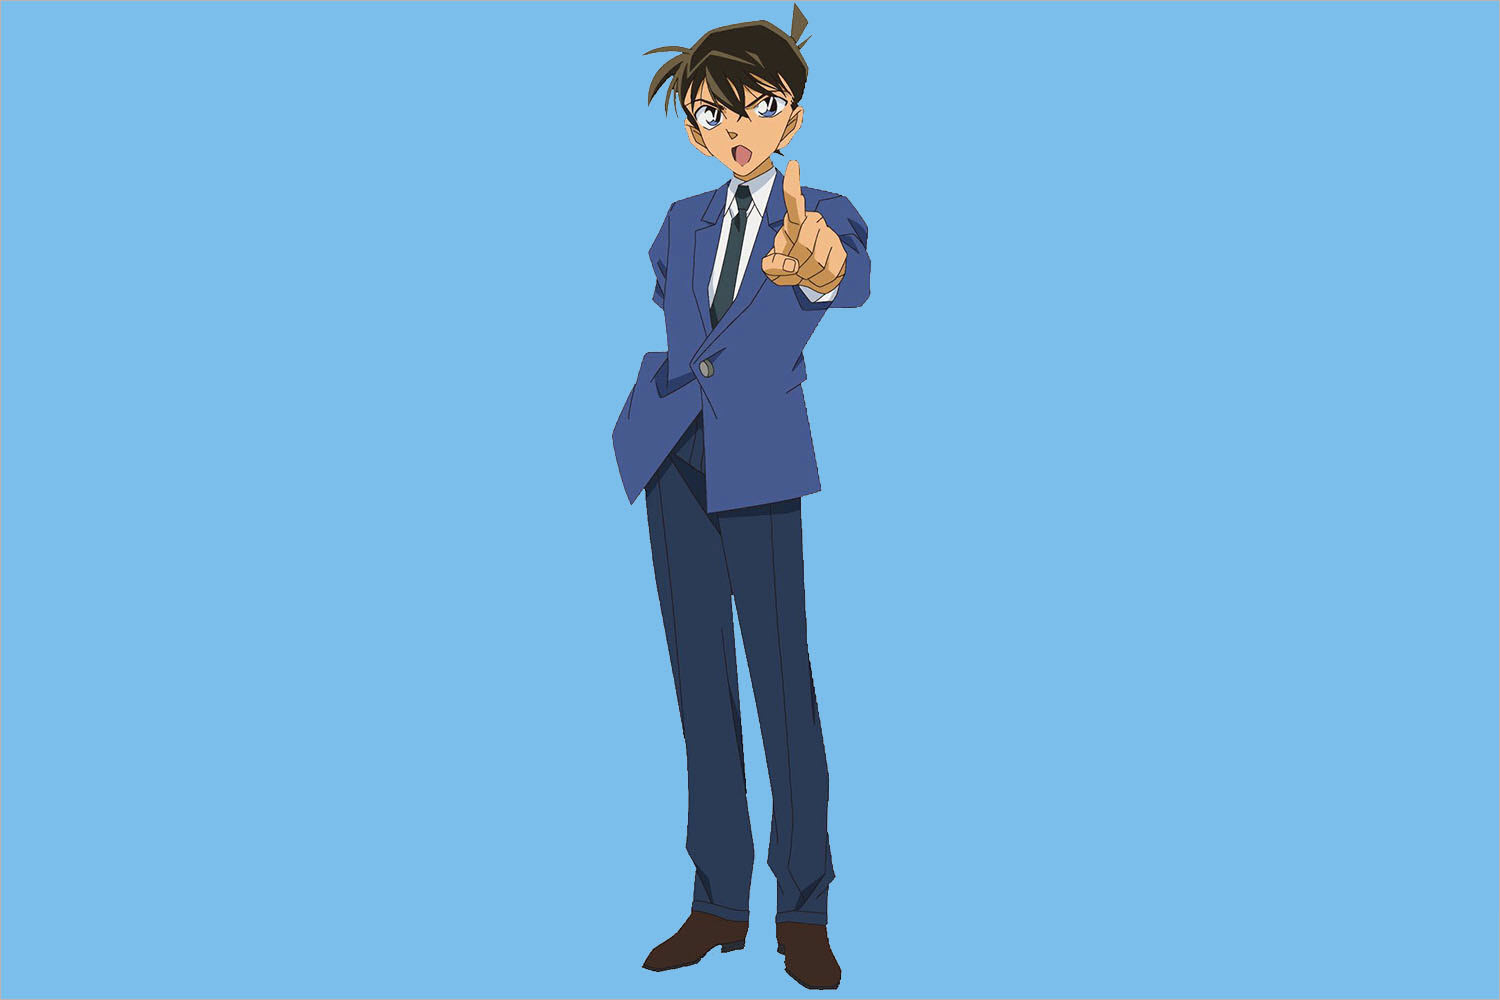 Hình ảnh Kudo Shinichi - Thám Tử đẹp trai, ngầu, chất nhất | Hình ảnh, Thám  tử, Anime